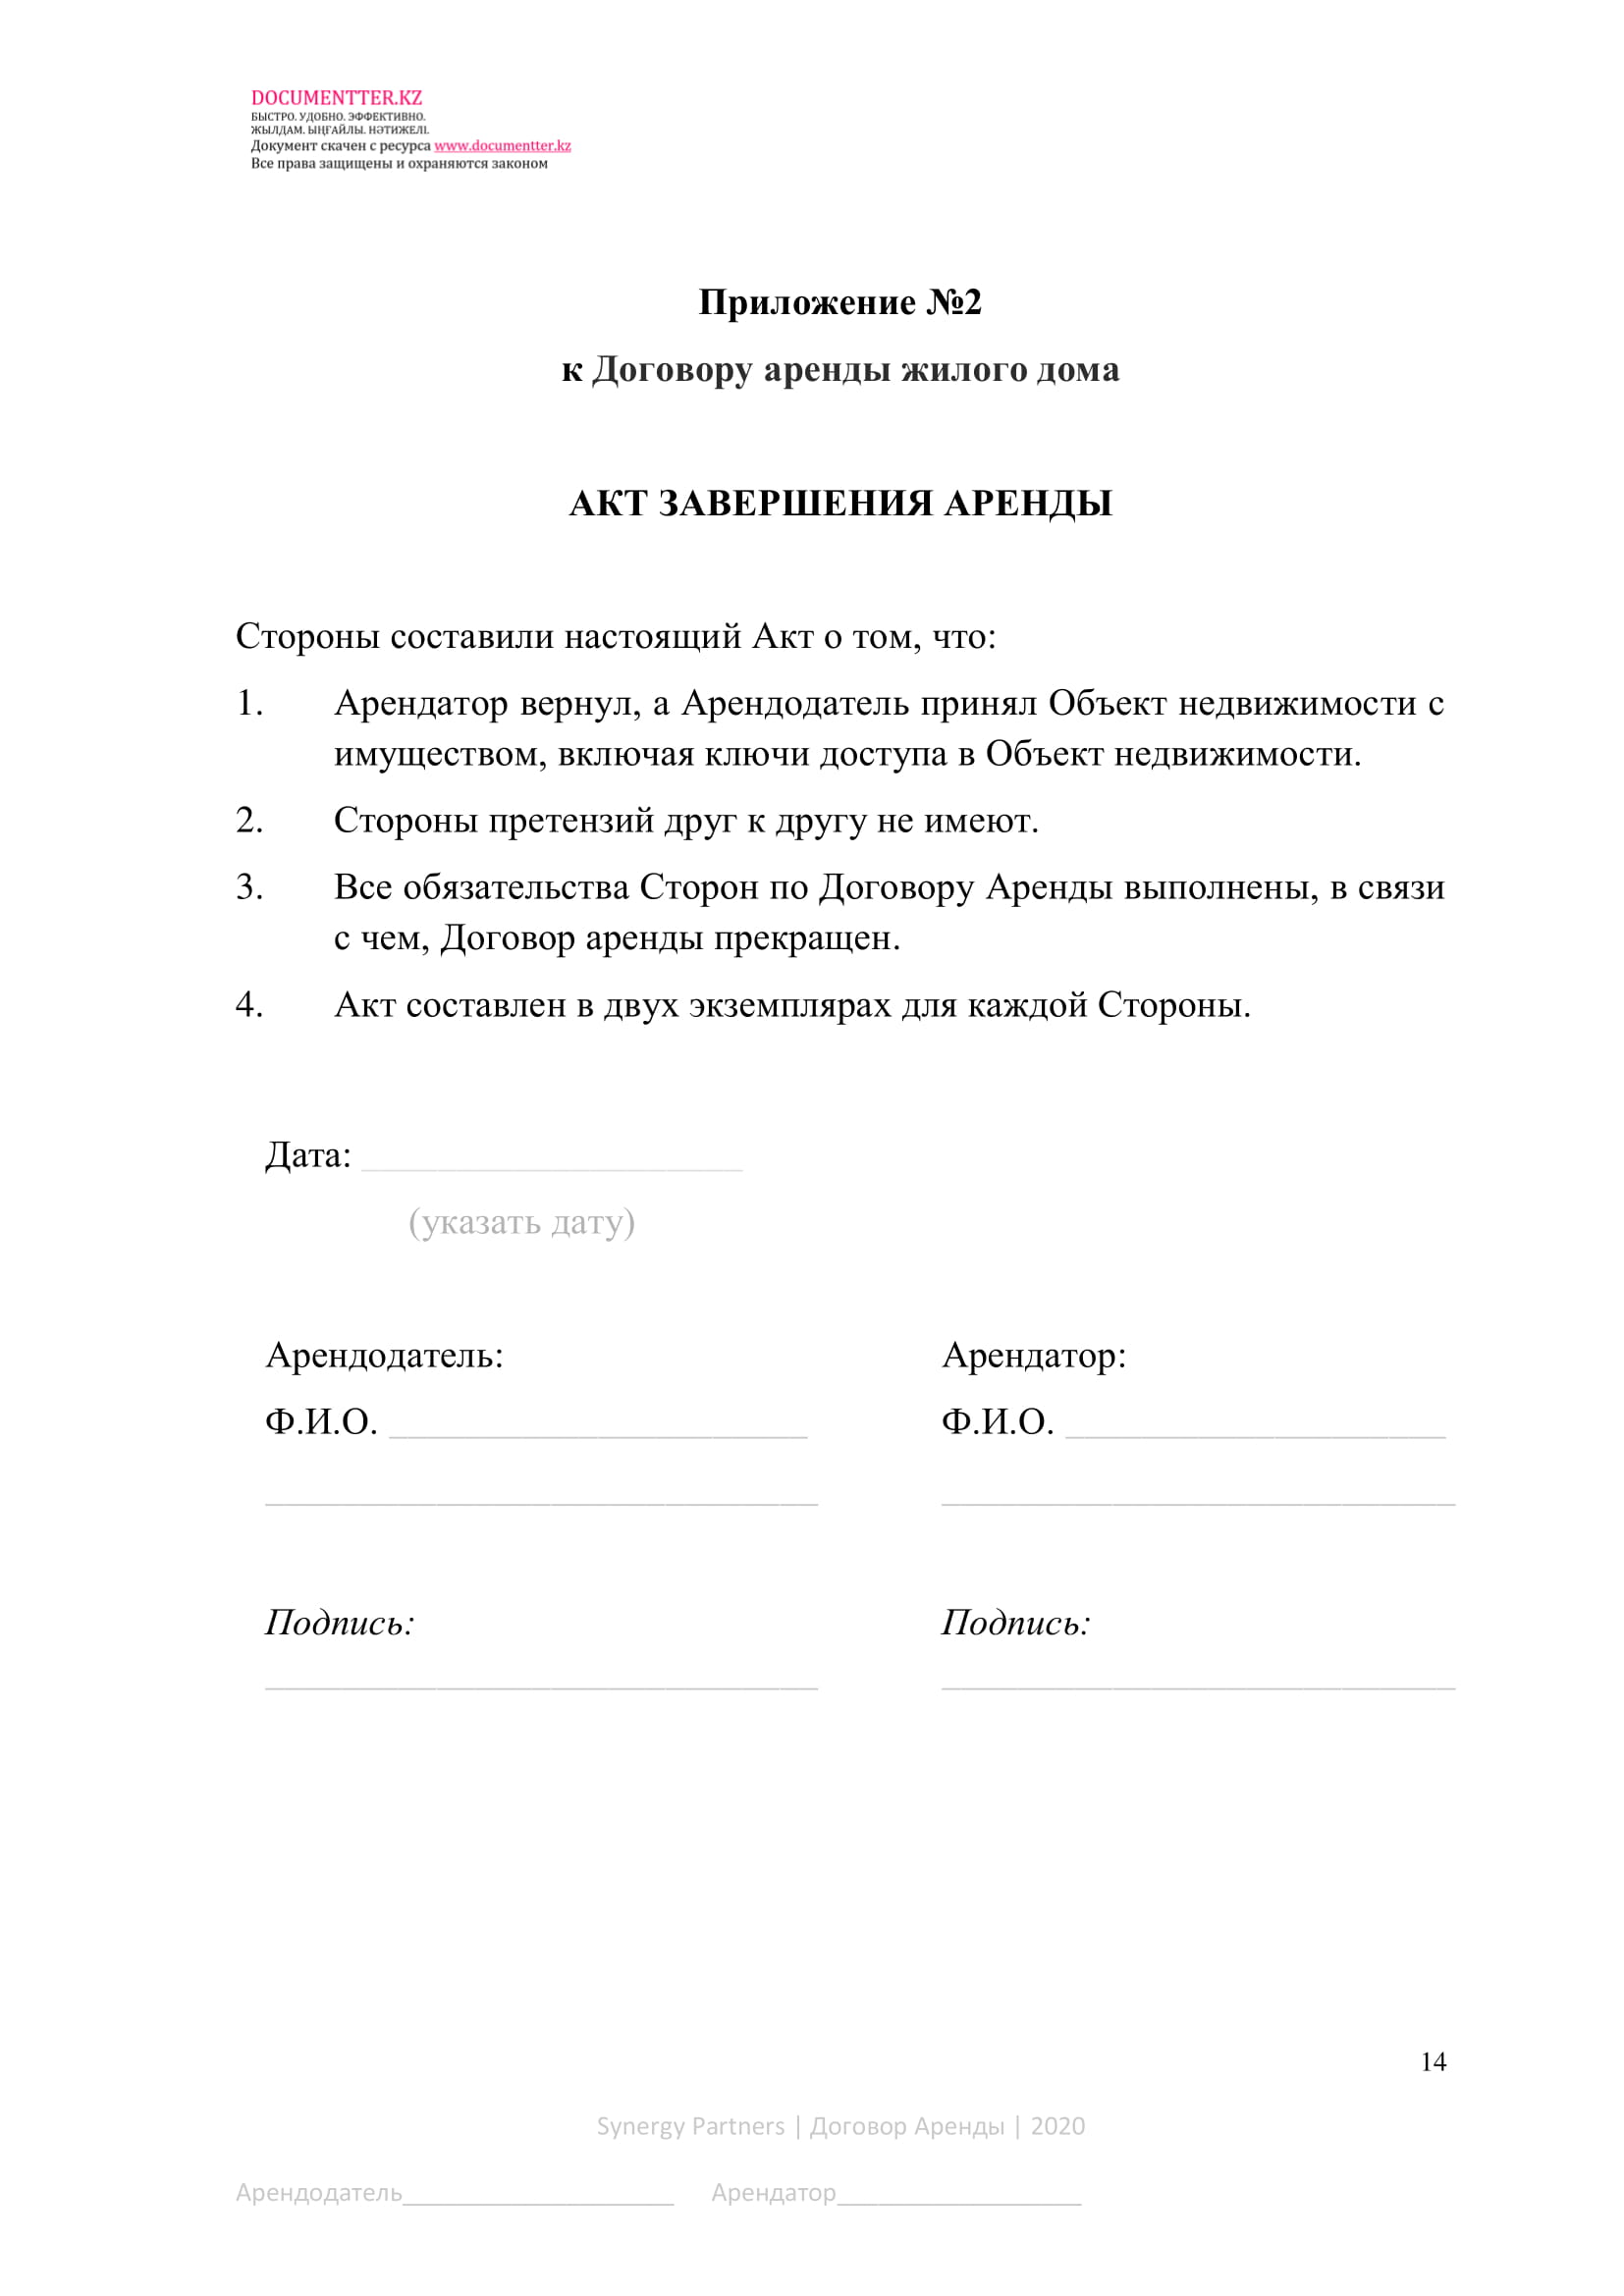 Договор аренды жилого дома, коттеджа, особняка | documentterkz.com в Казахстане